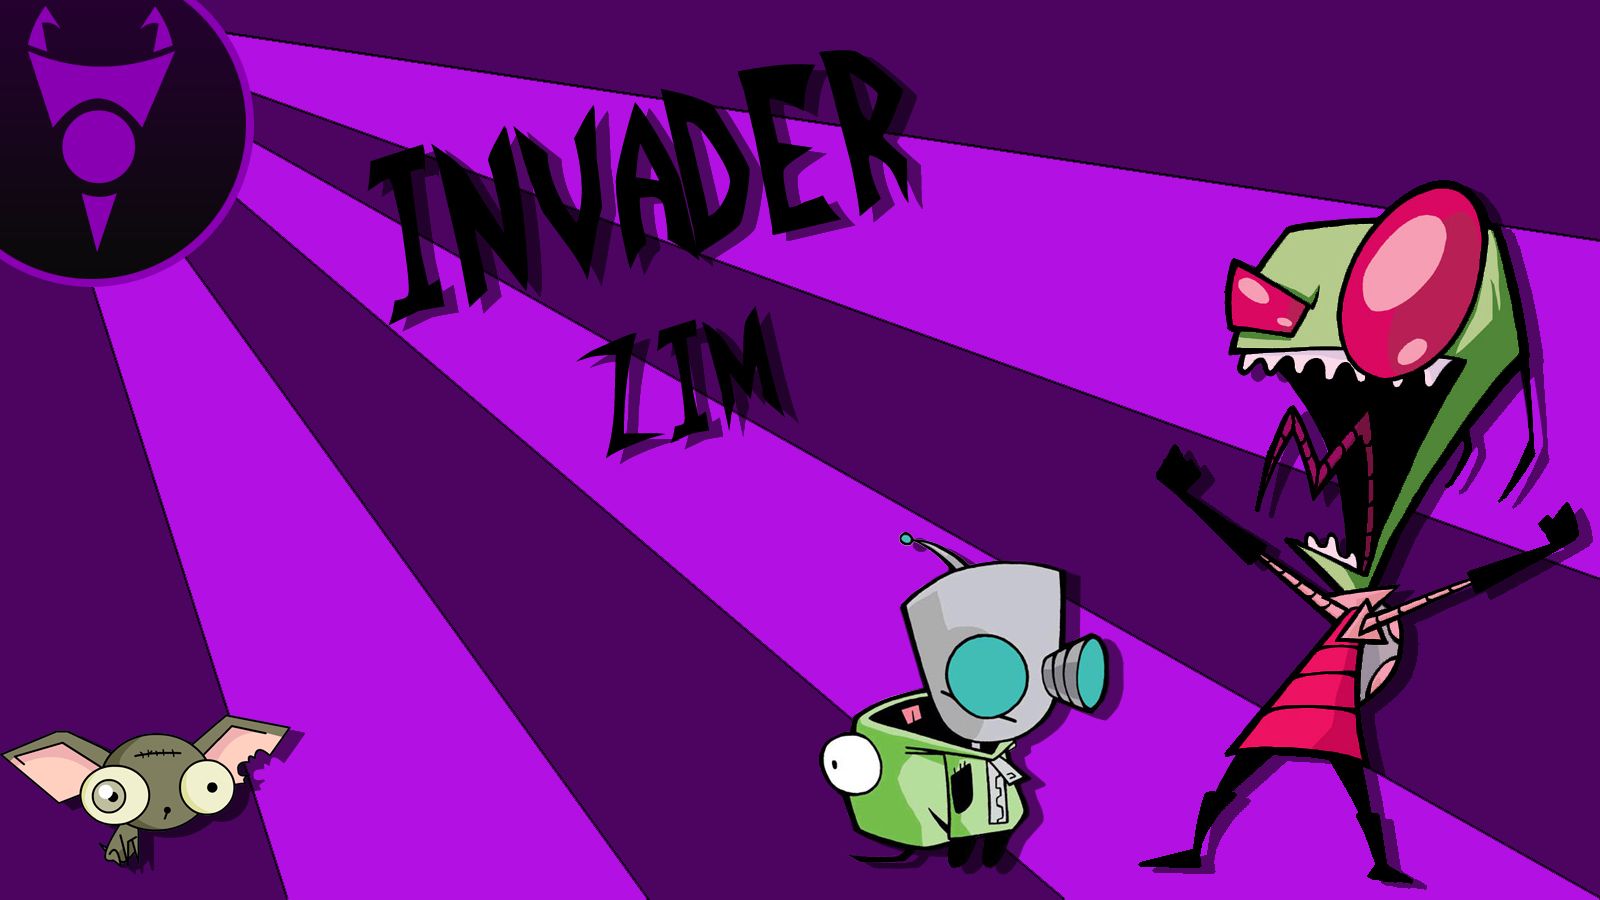 Invader Zim Computer Wallpapers, Desktop Backgrounds | 1600x900 ...